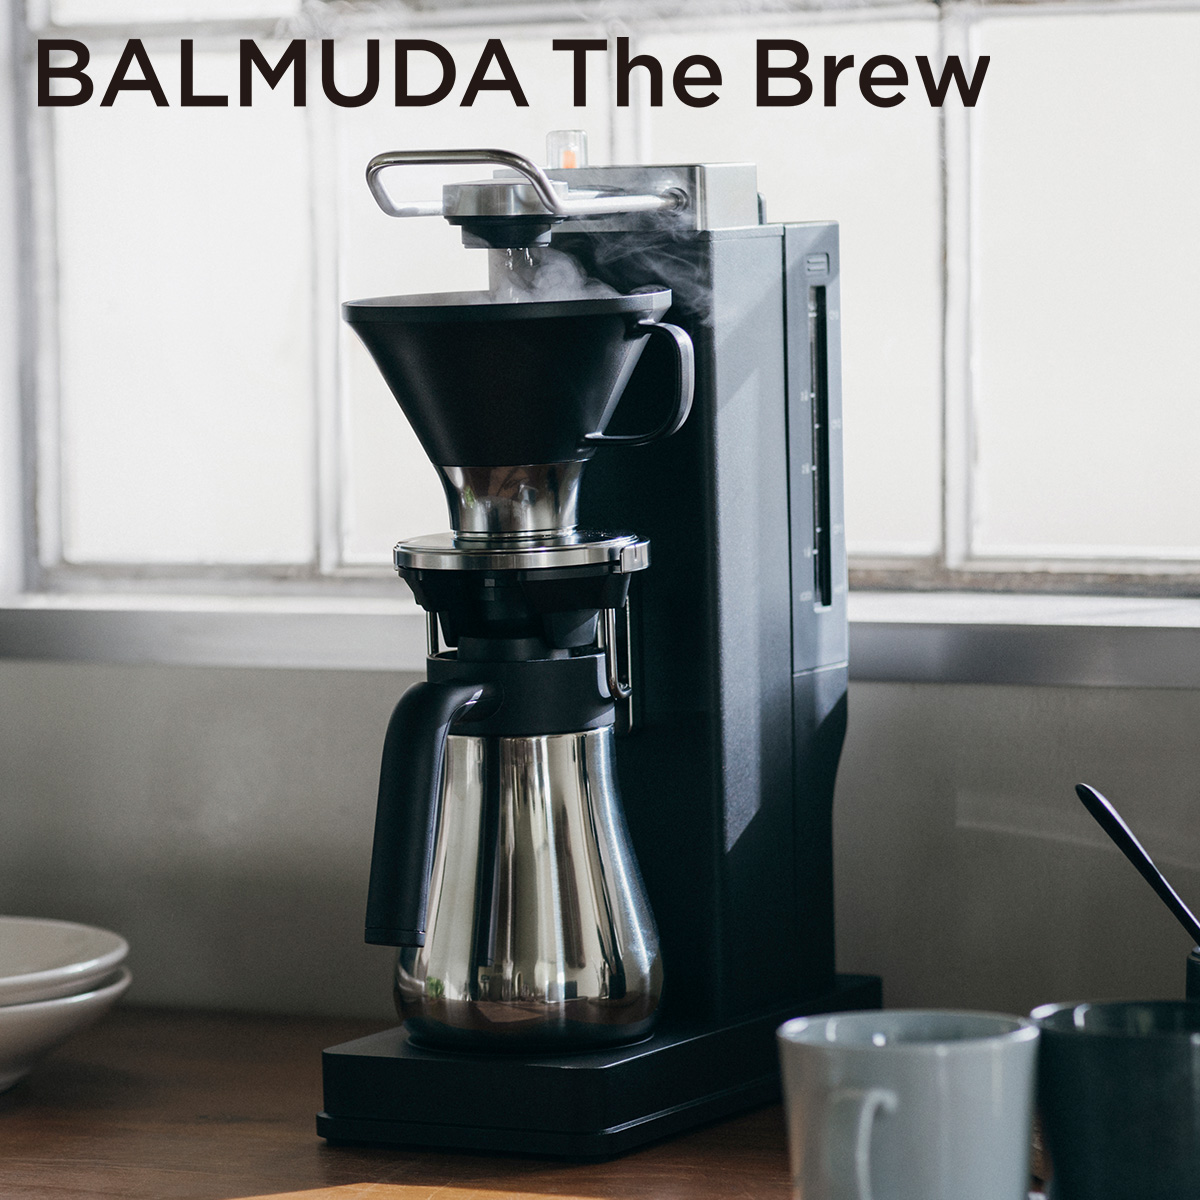 【5年保証付】[正規店]ザ・ブリュー コーヒーメーカー BALMUDA The Brew おしゃれ ブラック